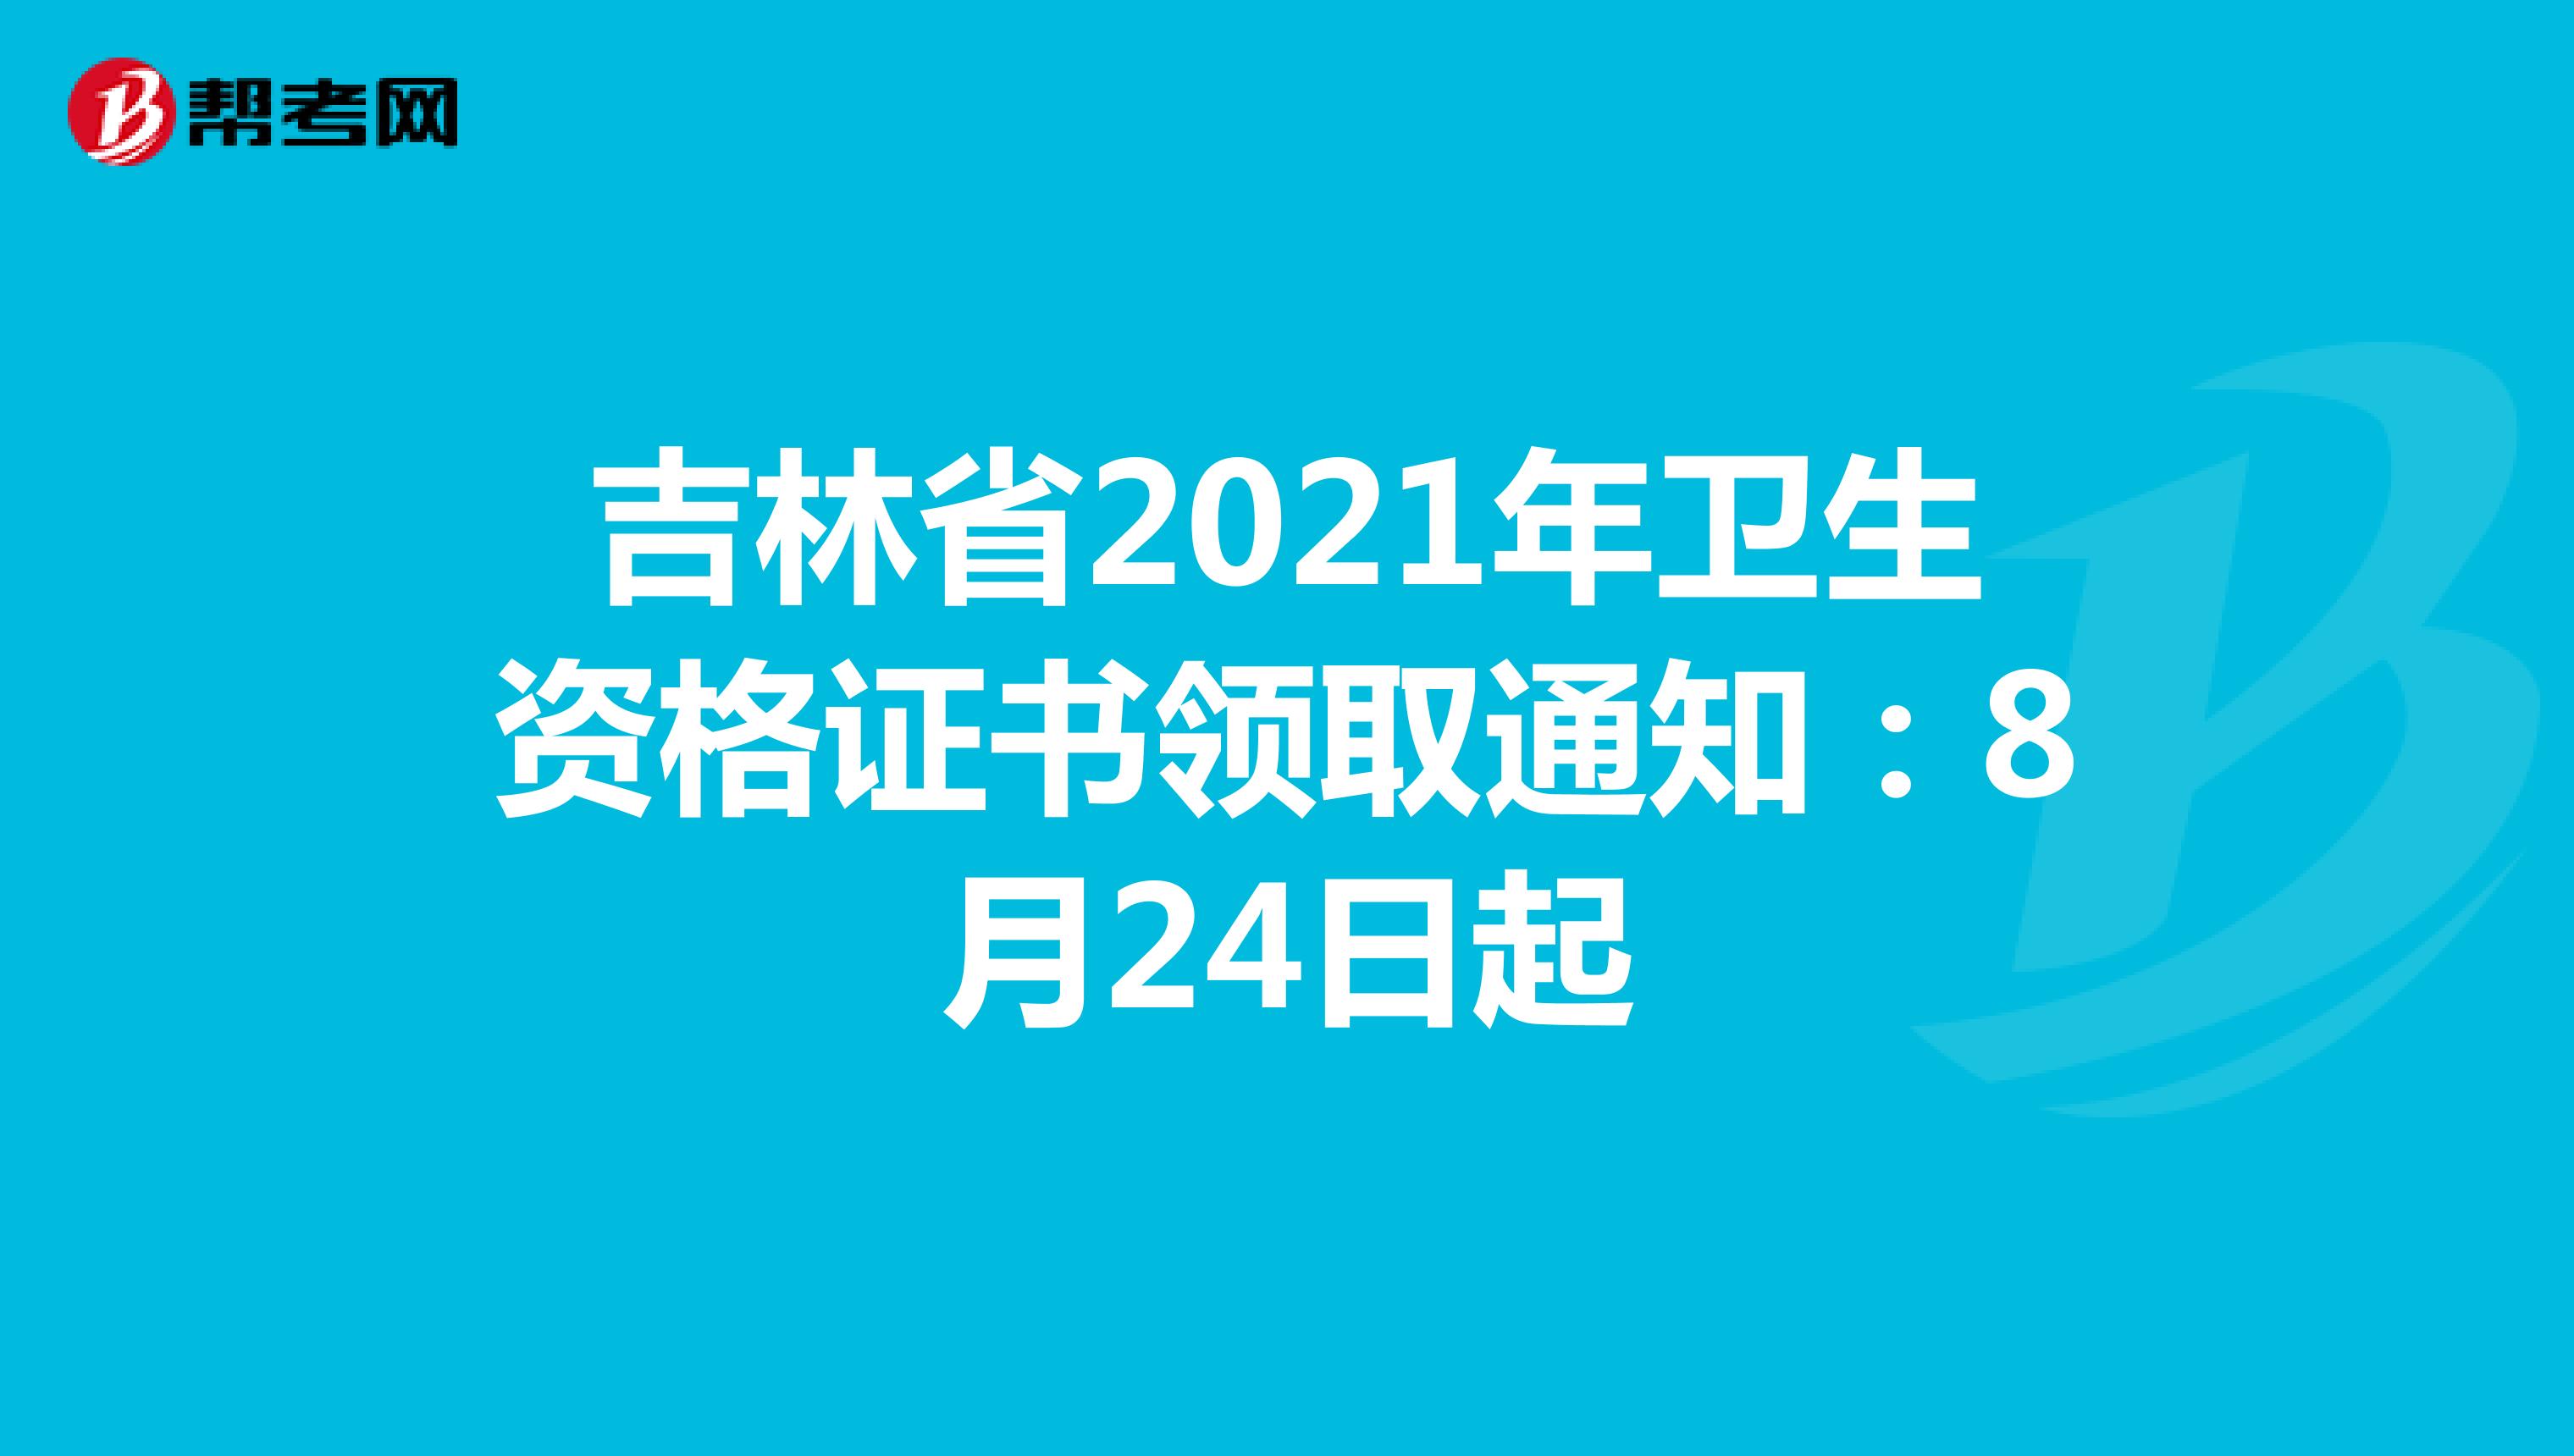 吉林省2021年卫生资格证书领取通知：8月24日起